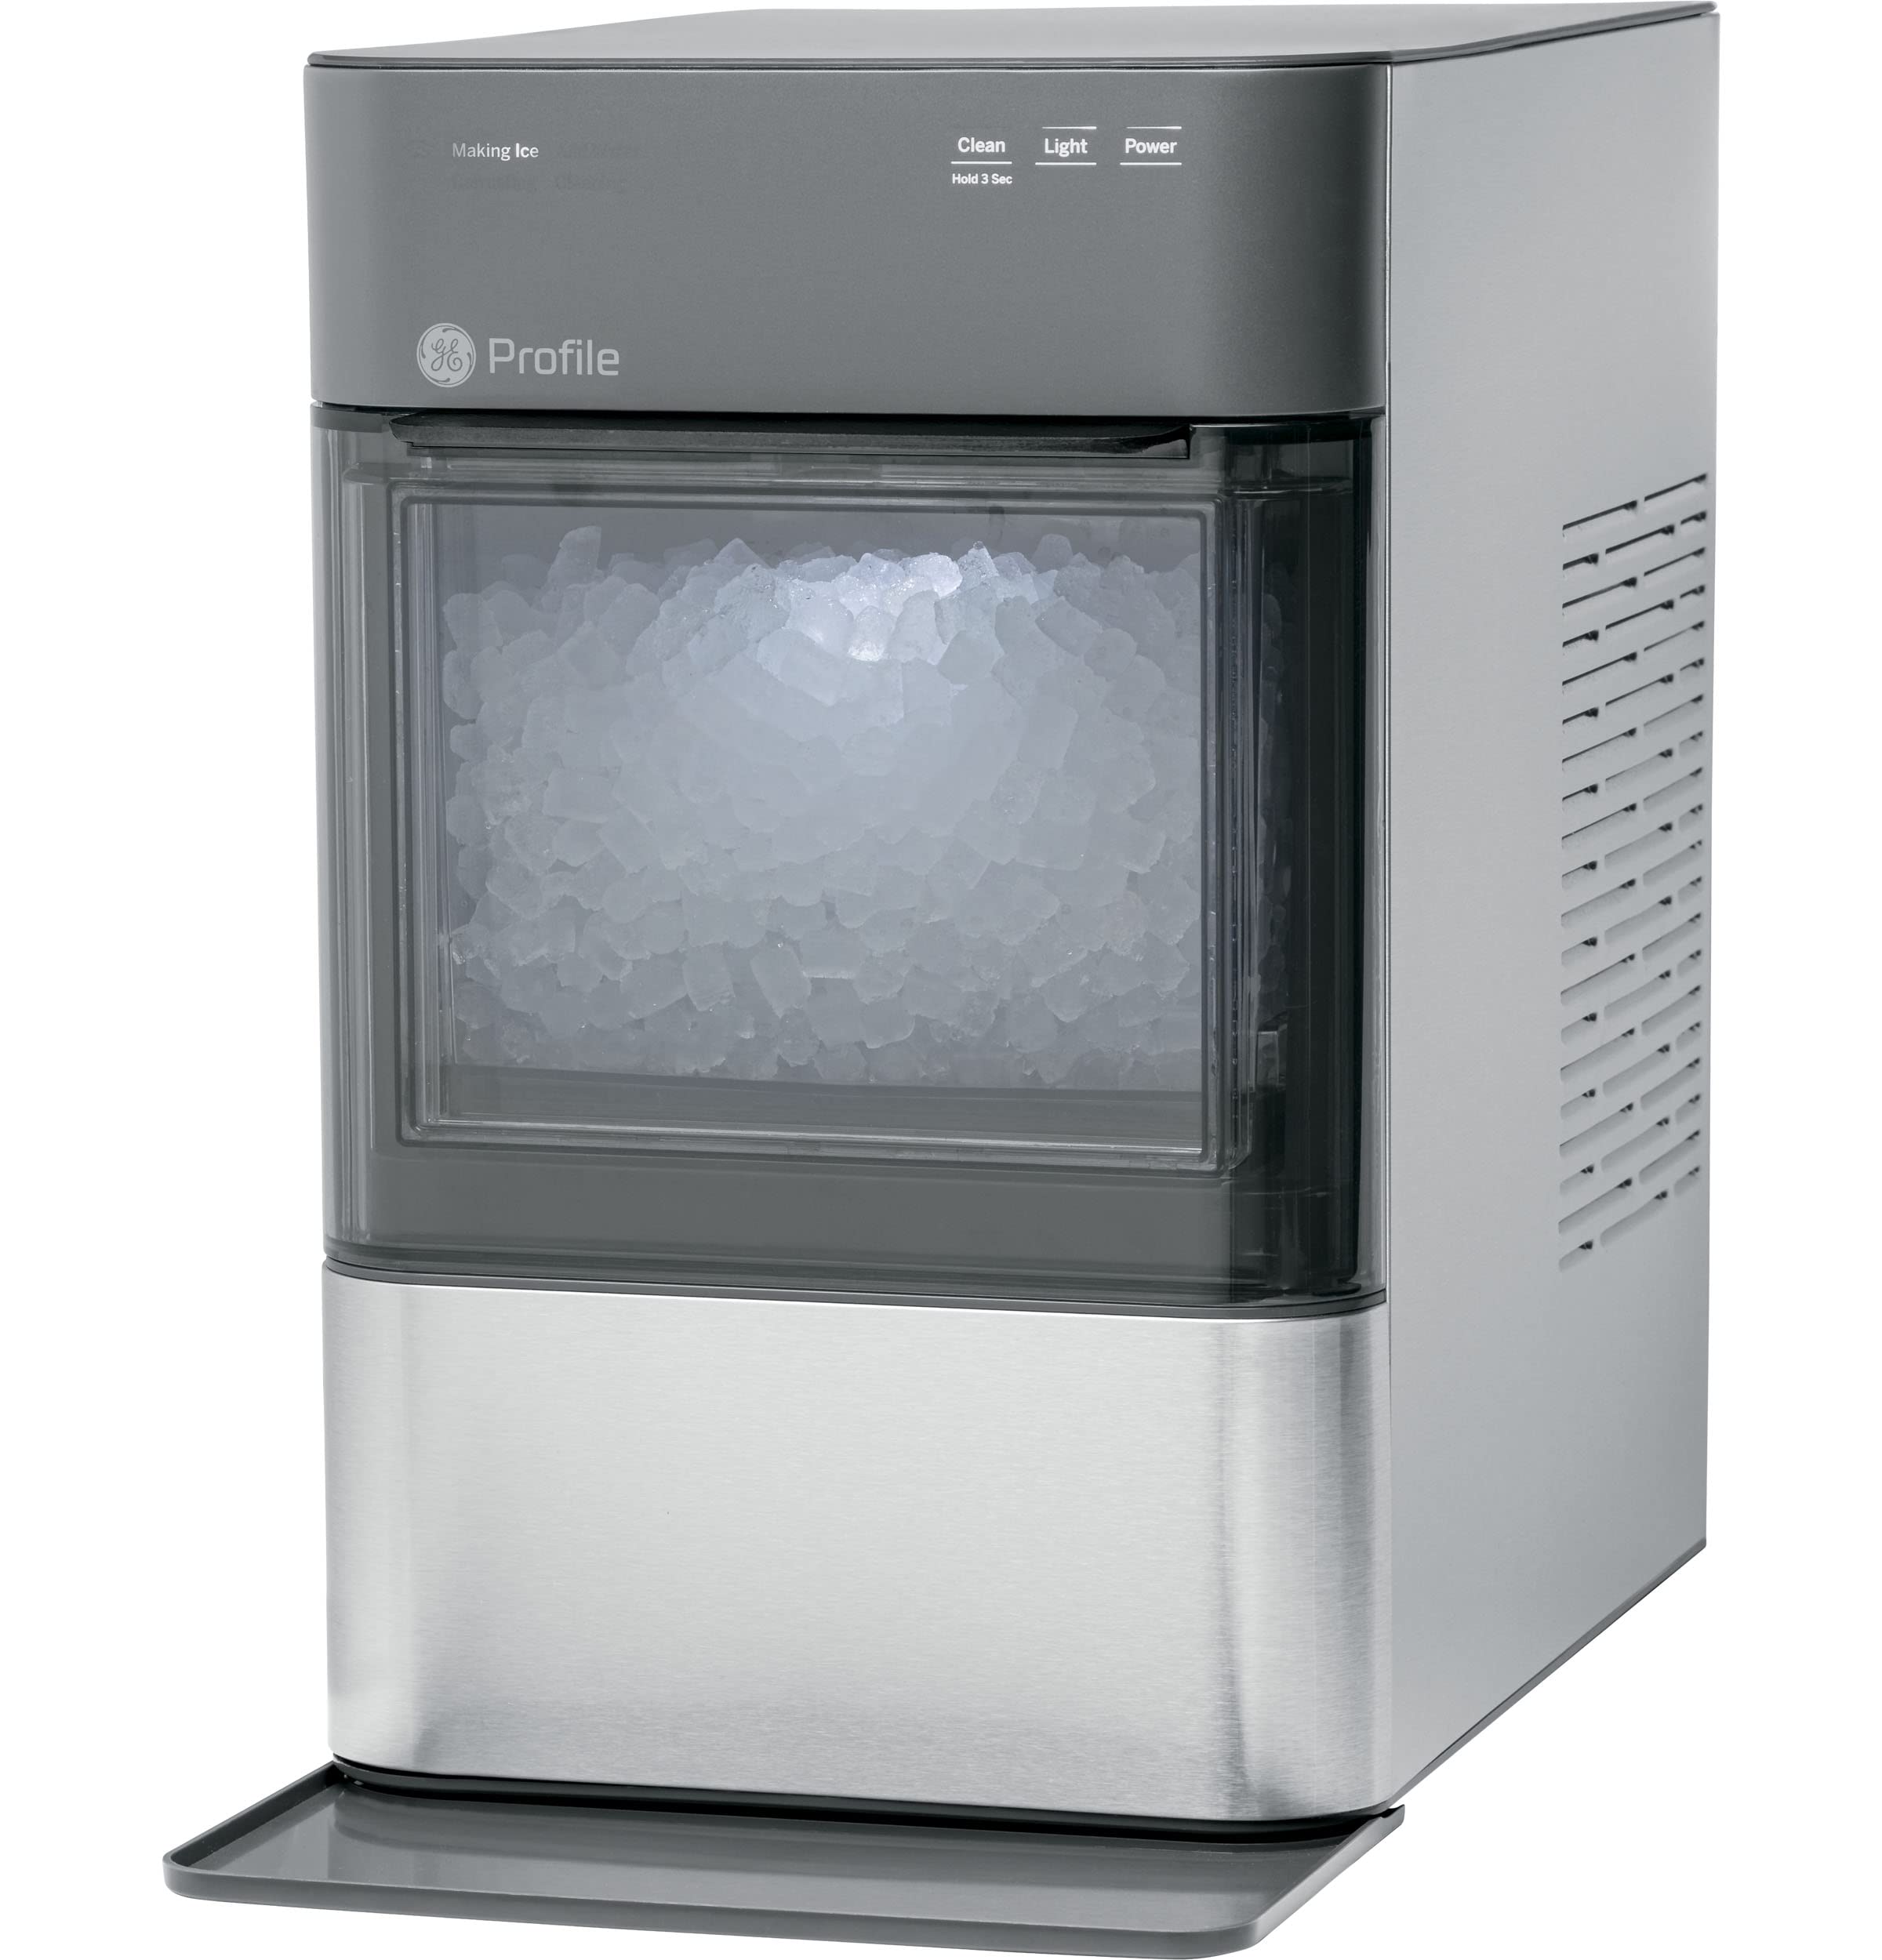 GE Profil Opal 2.0 | Nugt-Eisbereiter für die Arbeitsplatte | Eismaschine mit WiFi-Konnektivität | Smart-Home-Küchen-Essentials | Edelstahl